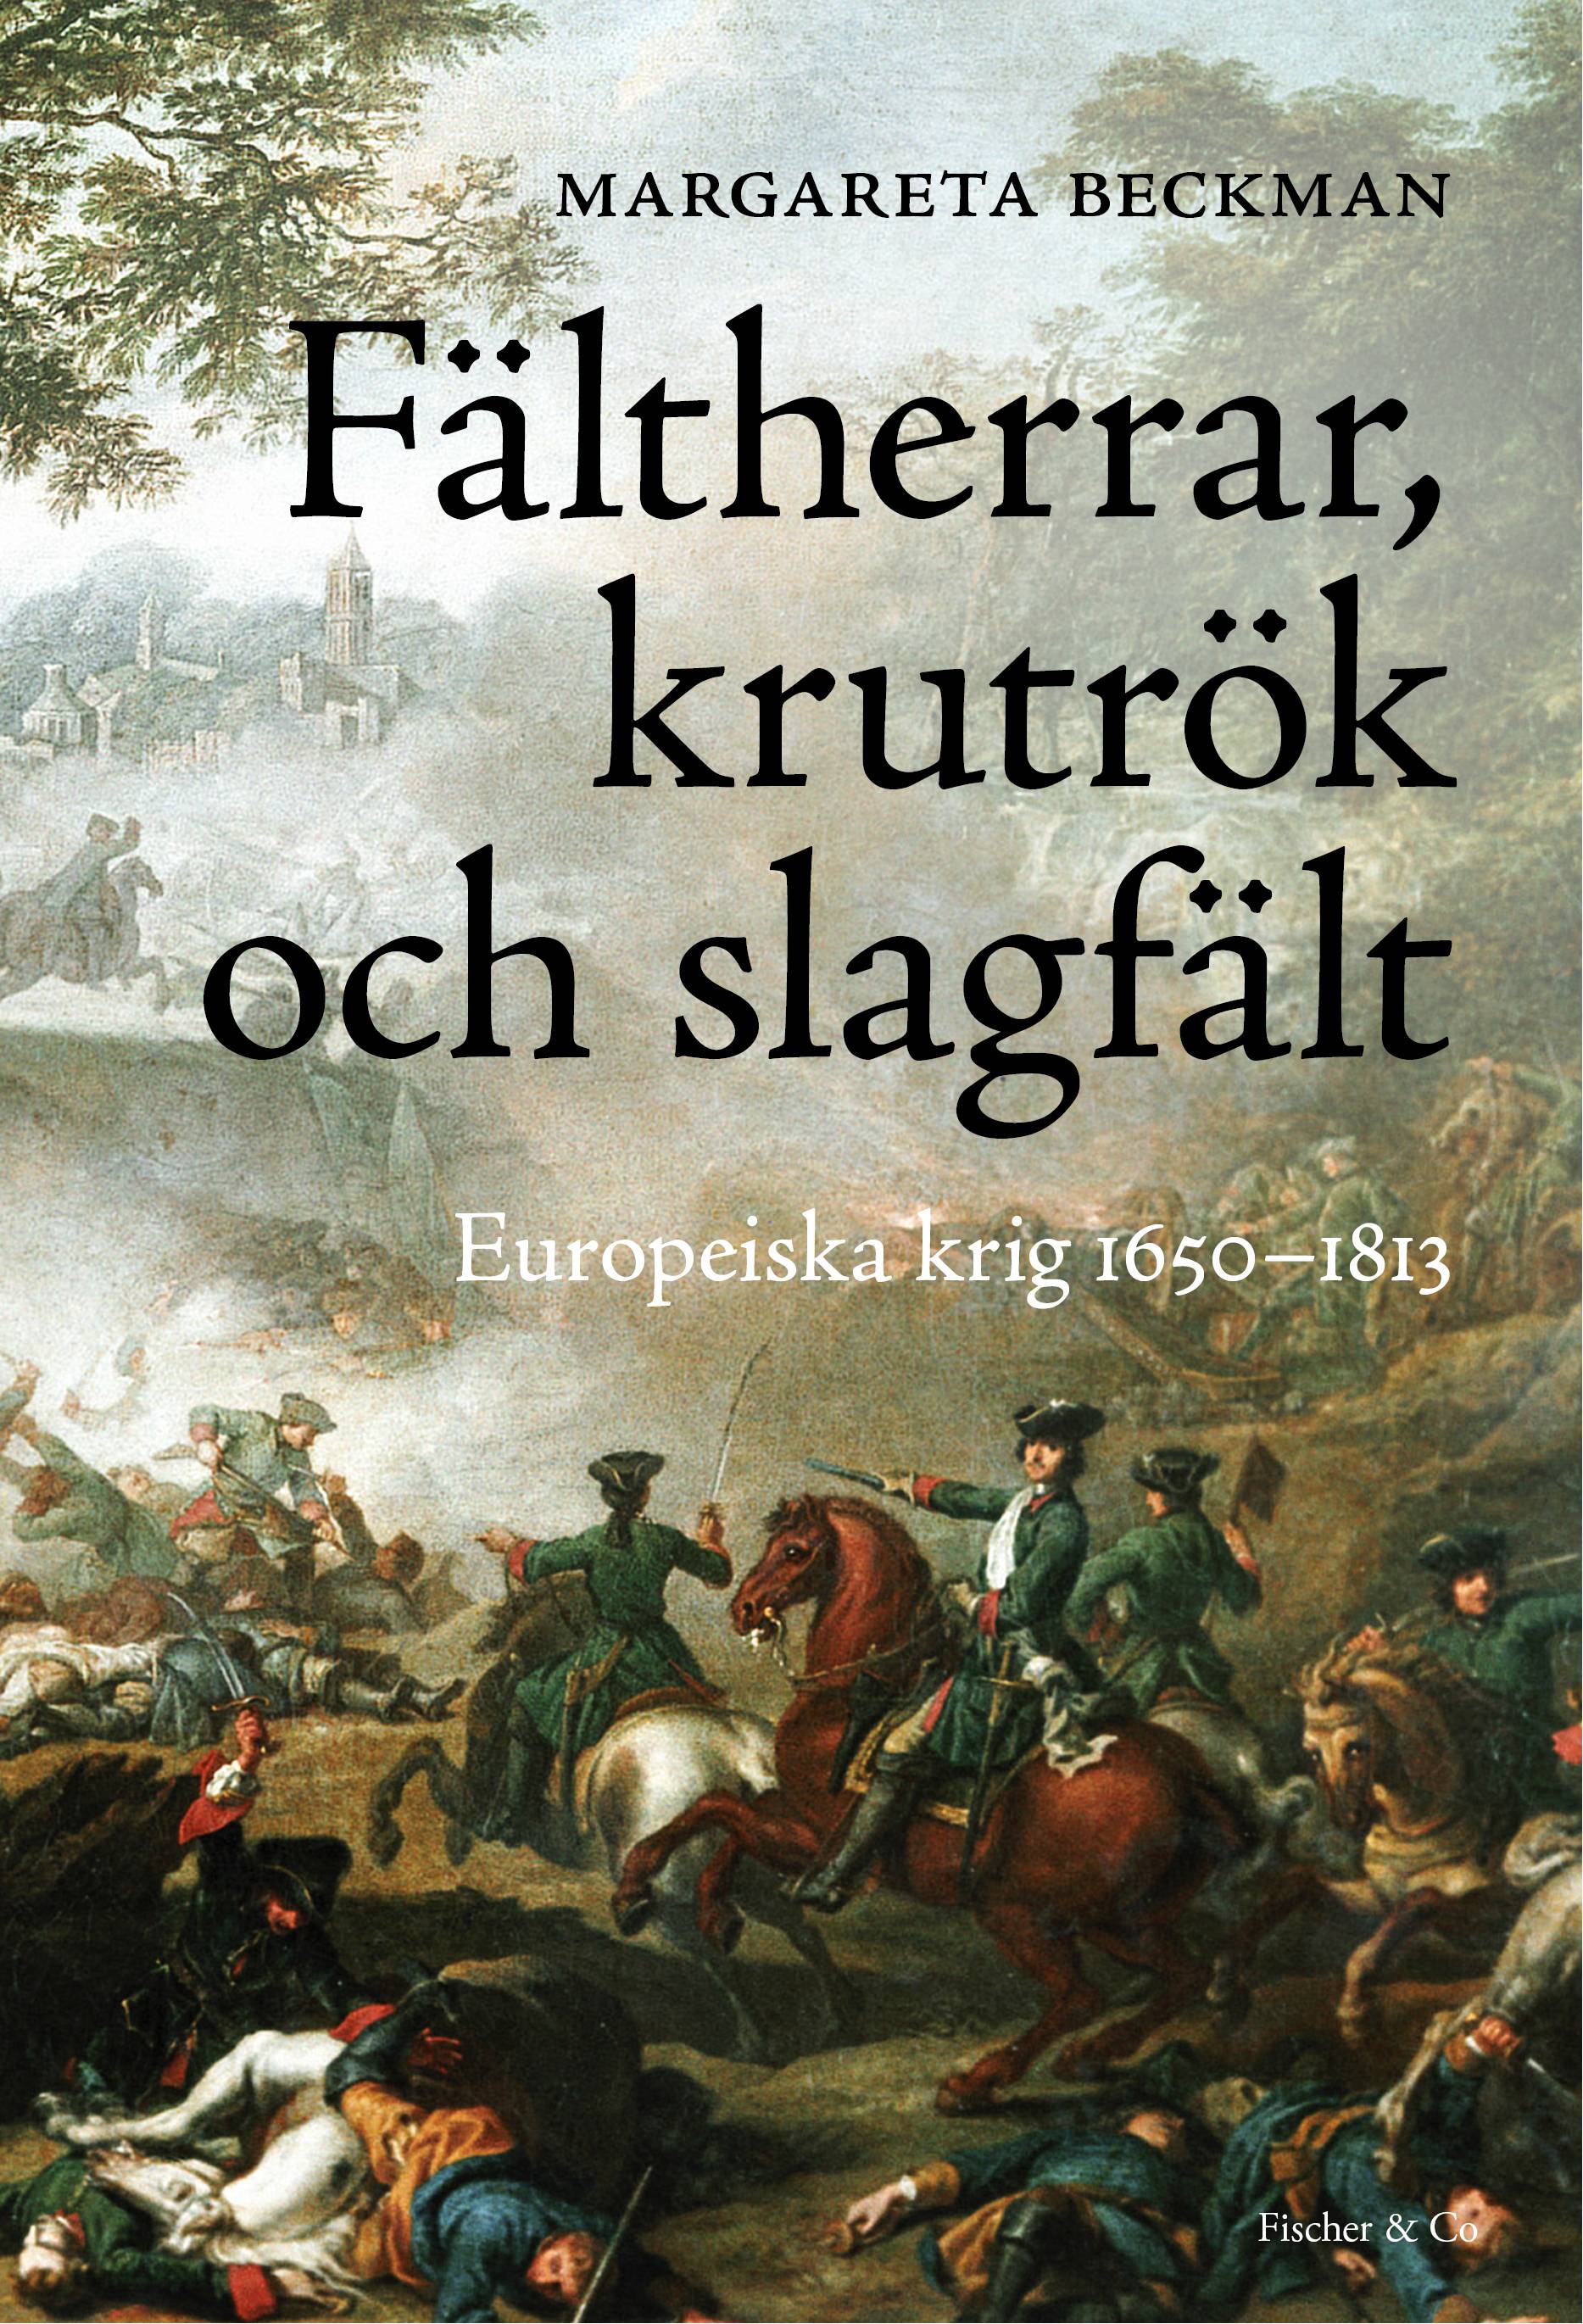 Fältherrar, krutrök och slagfält : europeiska krig 1650-1813